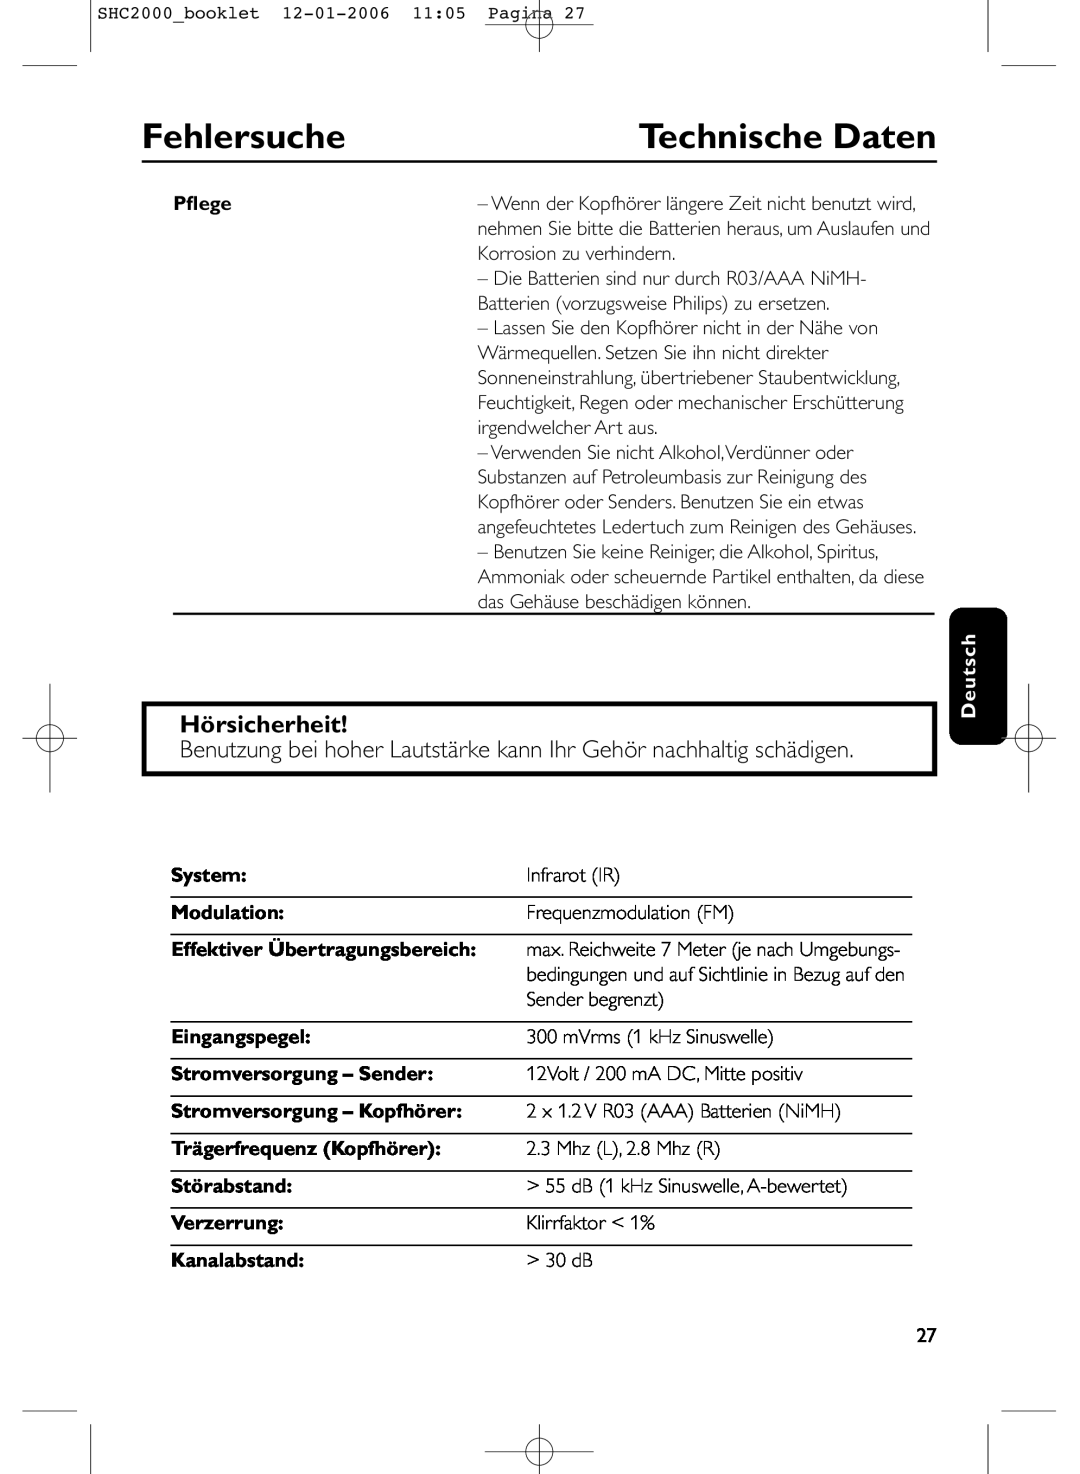 Philips SHC2000 manual Technische Daten, Hörsicherheit, Fehlersuche, Pﬂege, Deutsch, System, Modulation, Eingangspegel 